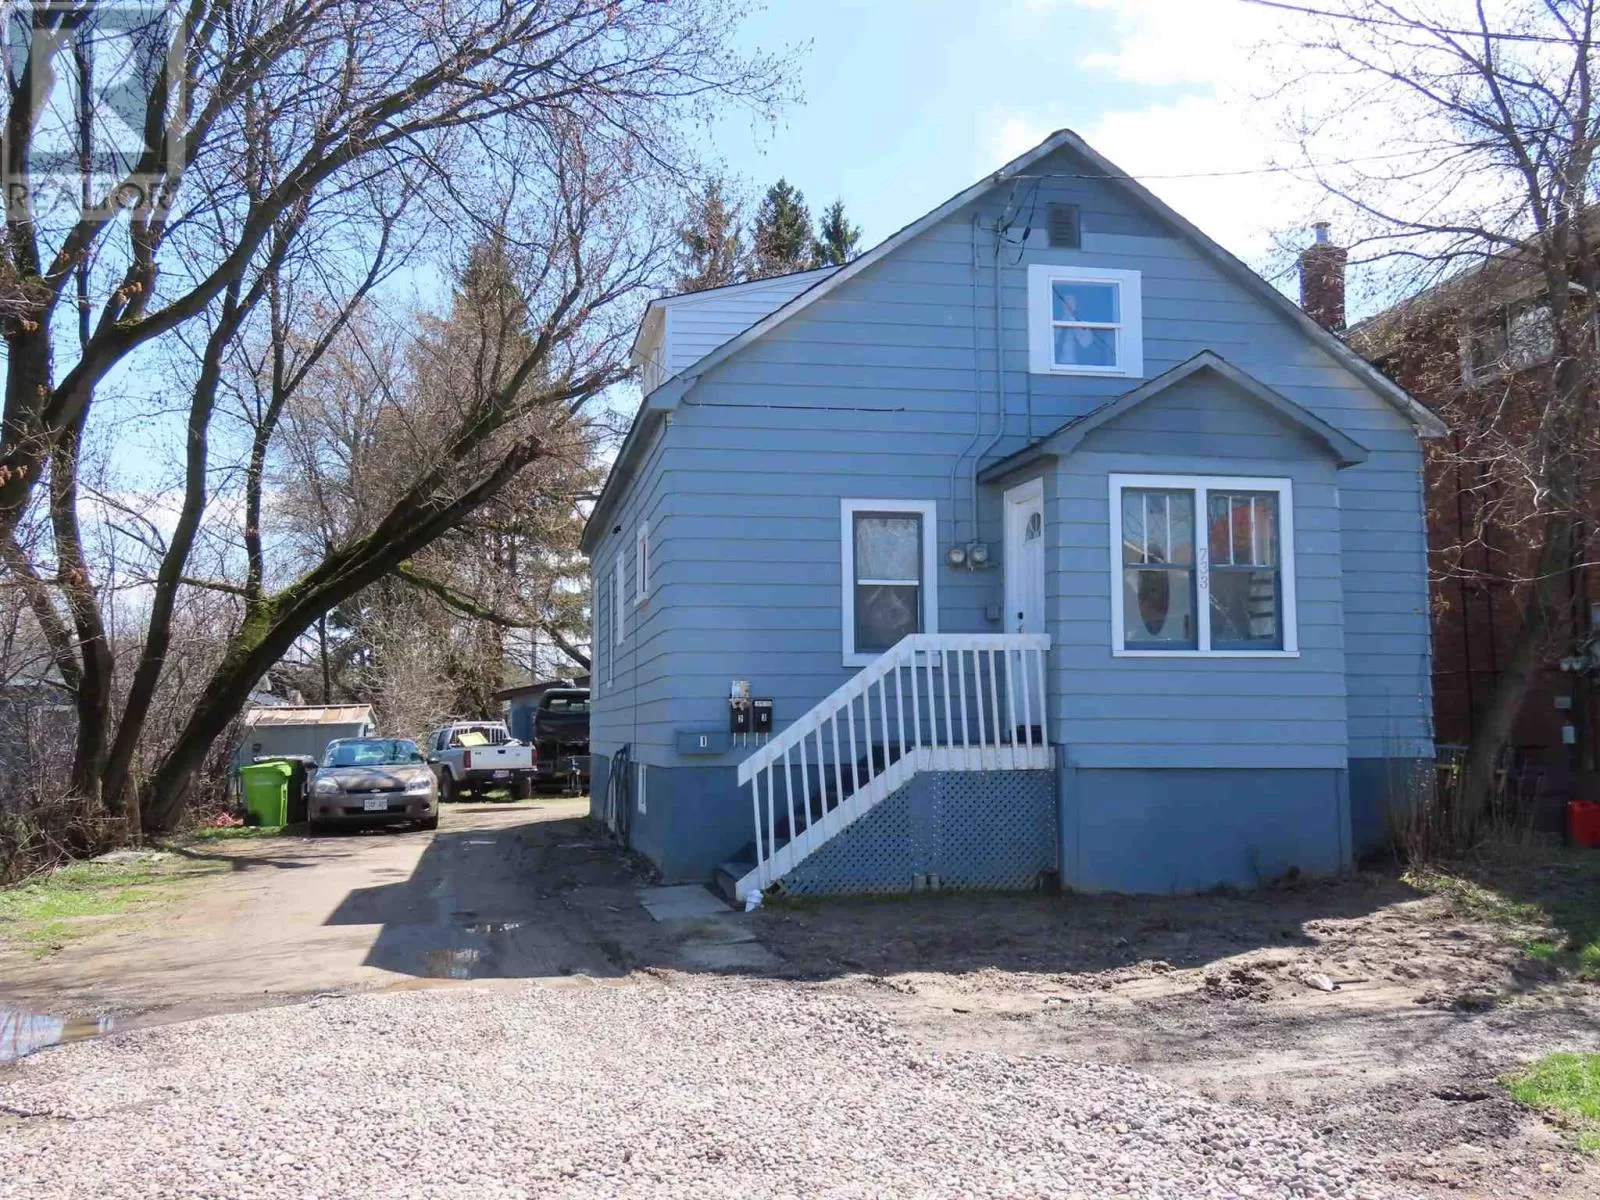 Duplex for rent: 733 Mckenzie, Sault Ste Marie, Ontario P6C 1H2